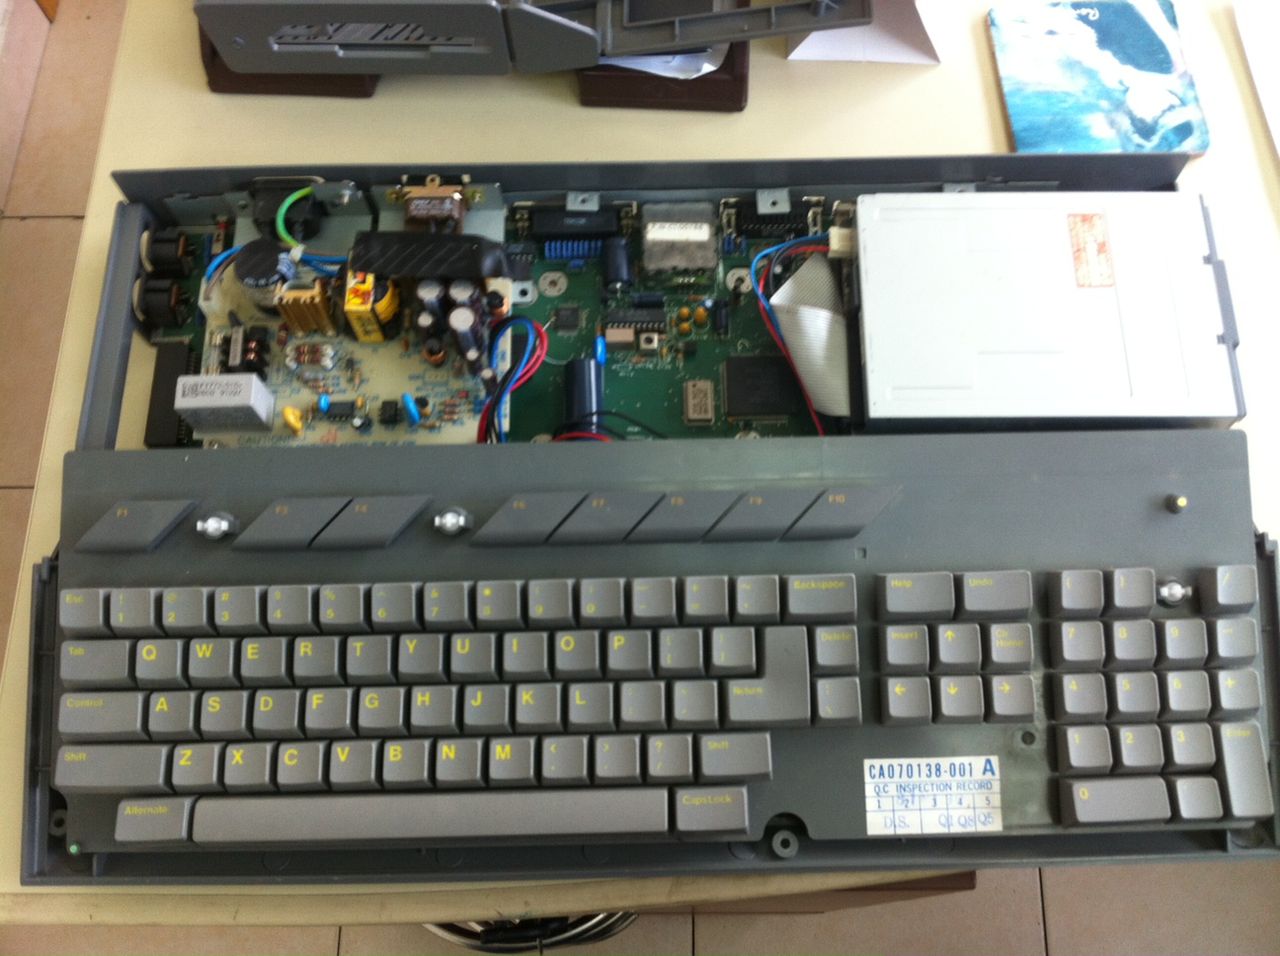 Ciemniejszy kolor plastiku z jakiego wykonana była obudowa Atari Sparrow oraz żółte literki na klawiaturze.